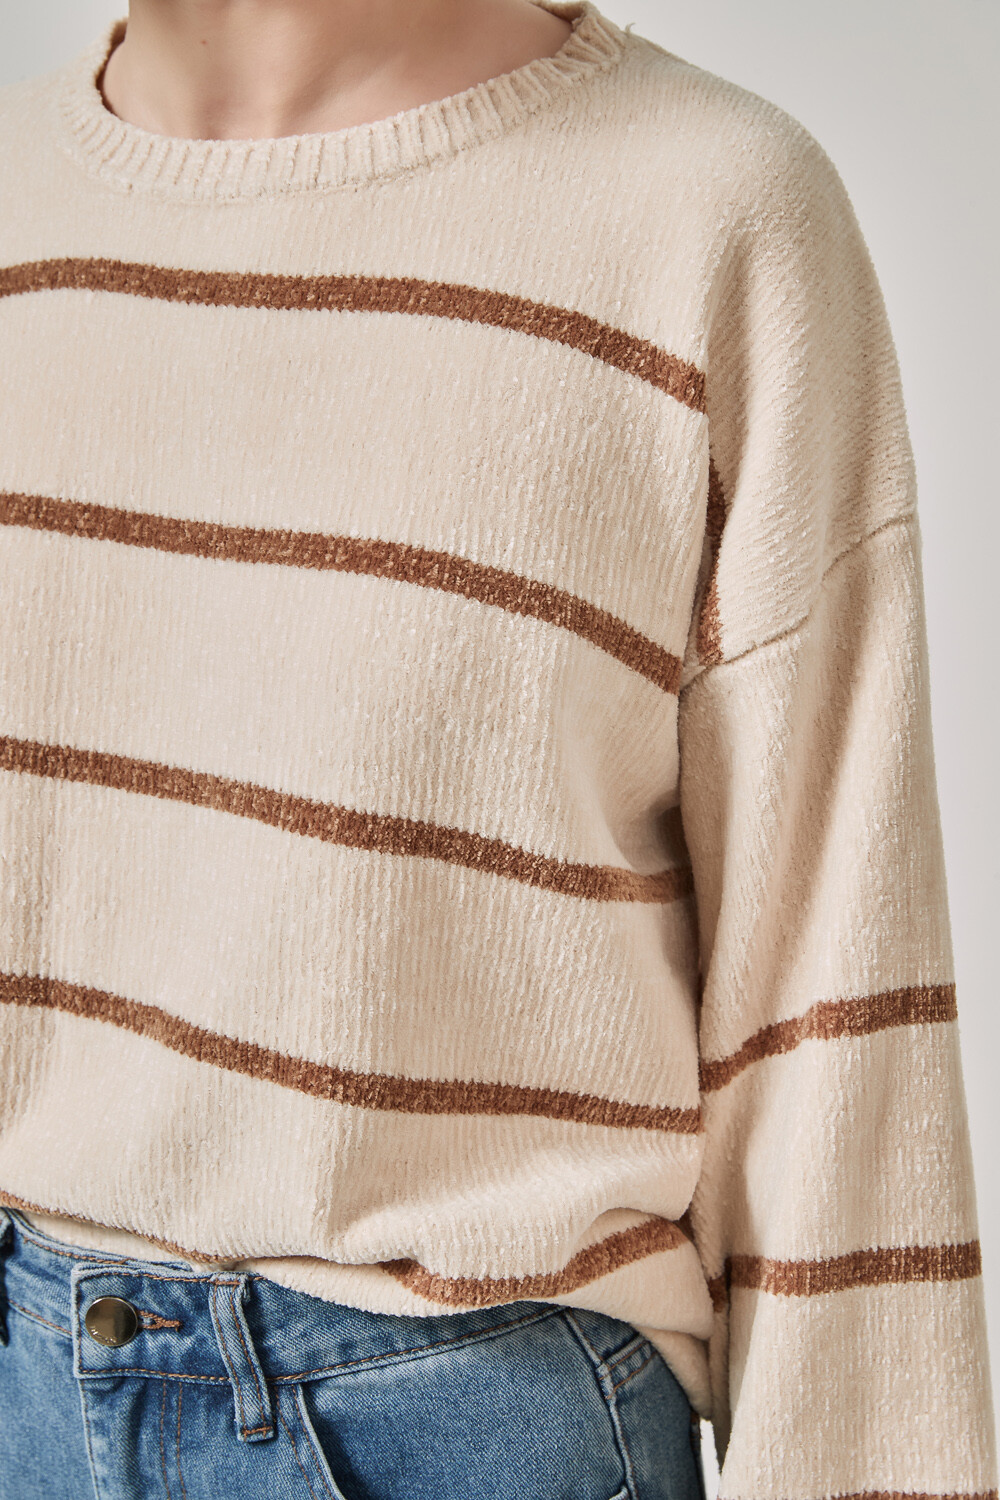 Sweater Couvete Estampado 2